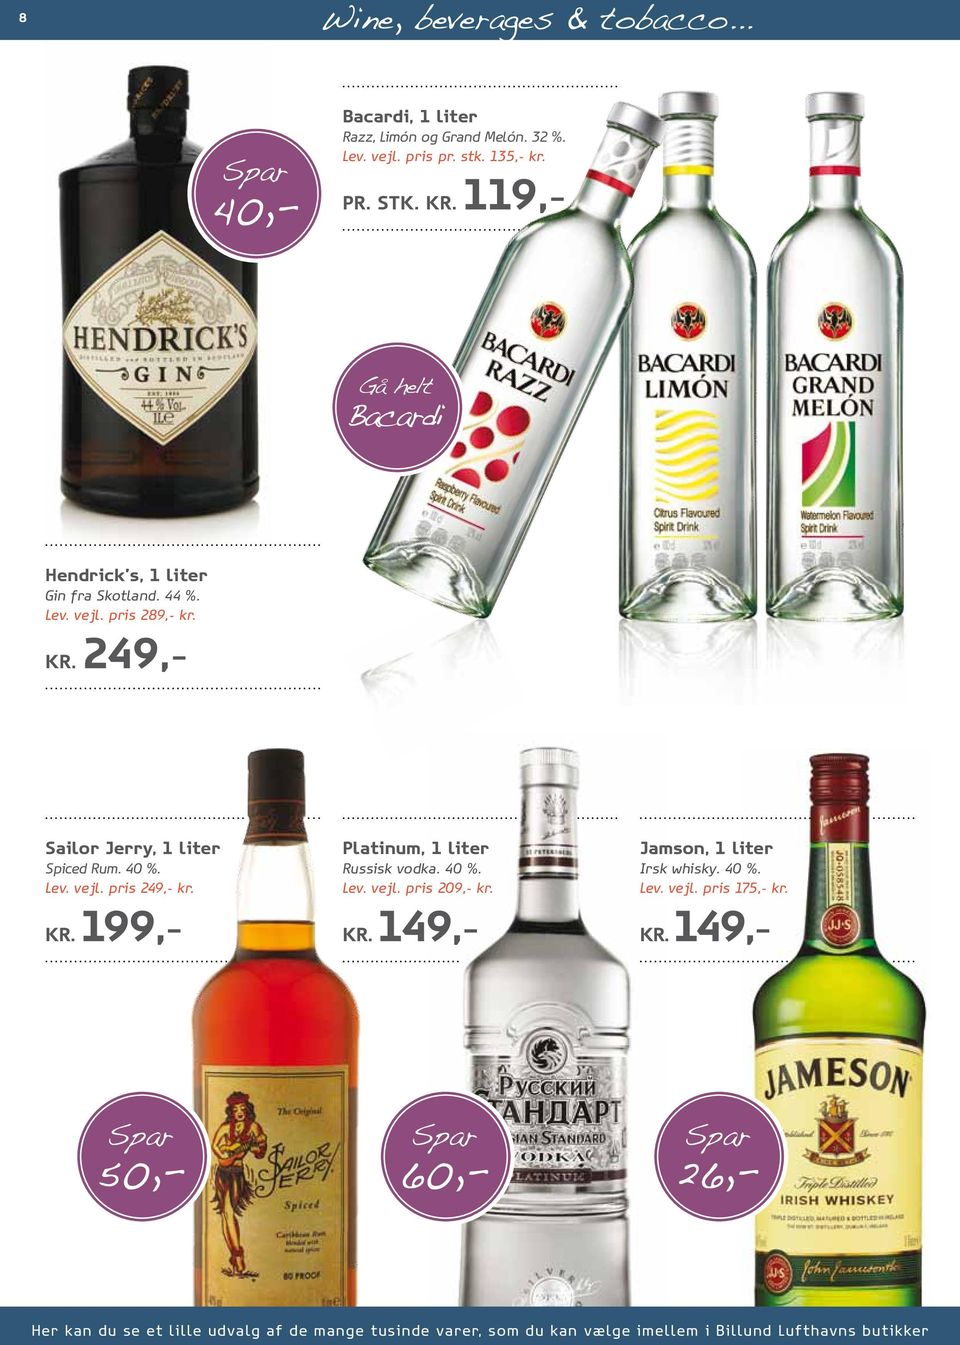 KR. 199,- Platinum, 1 liter Russisk vodka. 40 %. Lev. vejl. pris 209,- kr. KR. 149,- Jamson, 1 liter Irsk whisky. 40 %. Lev. vejl. pris 175,- kr.